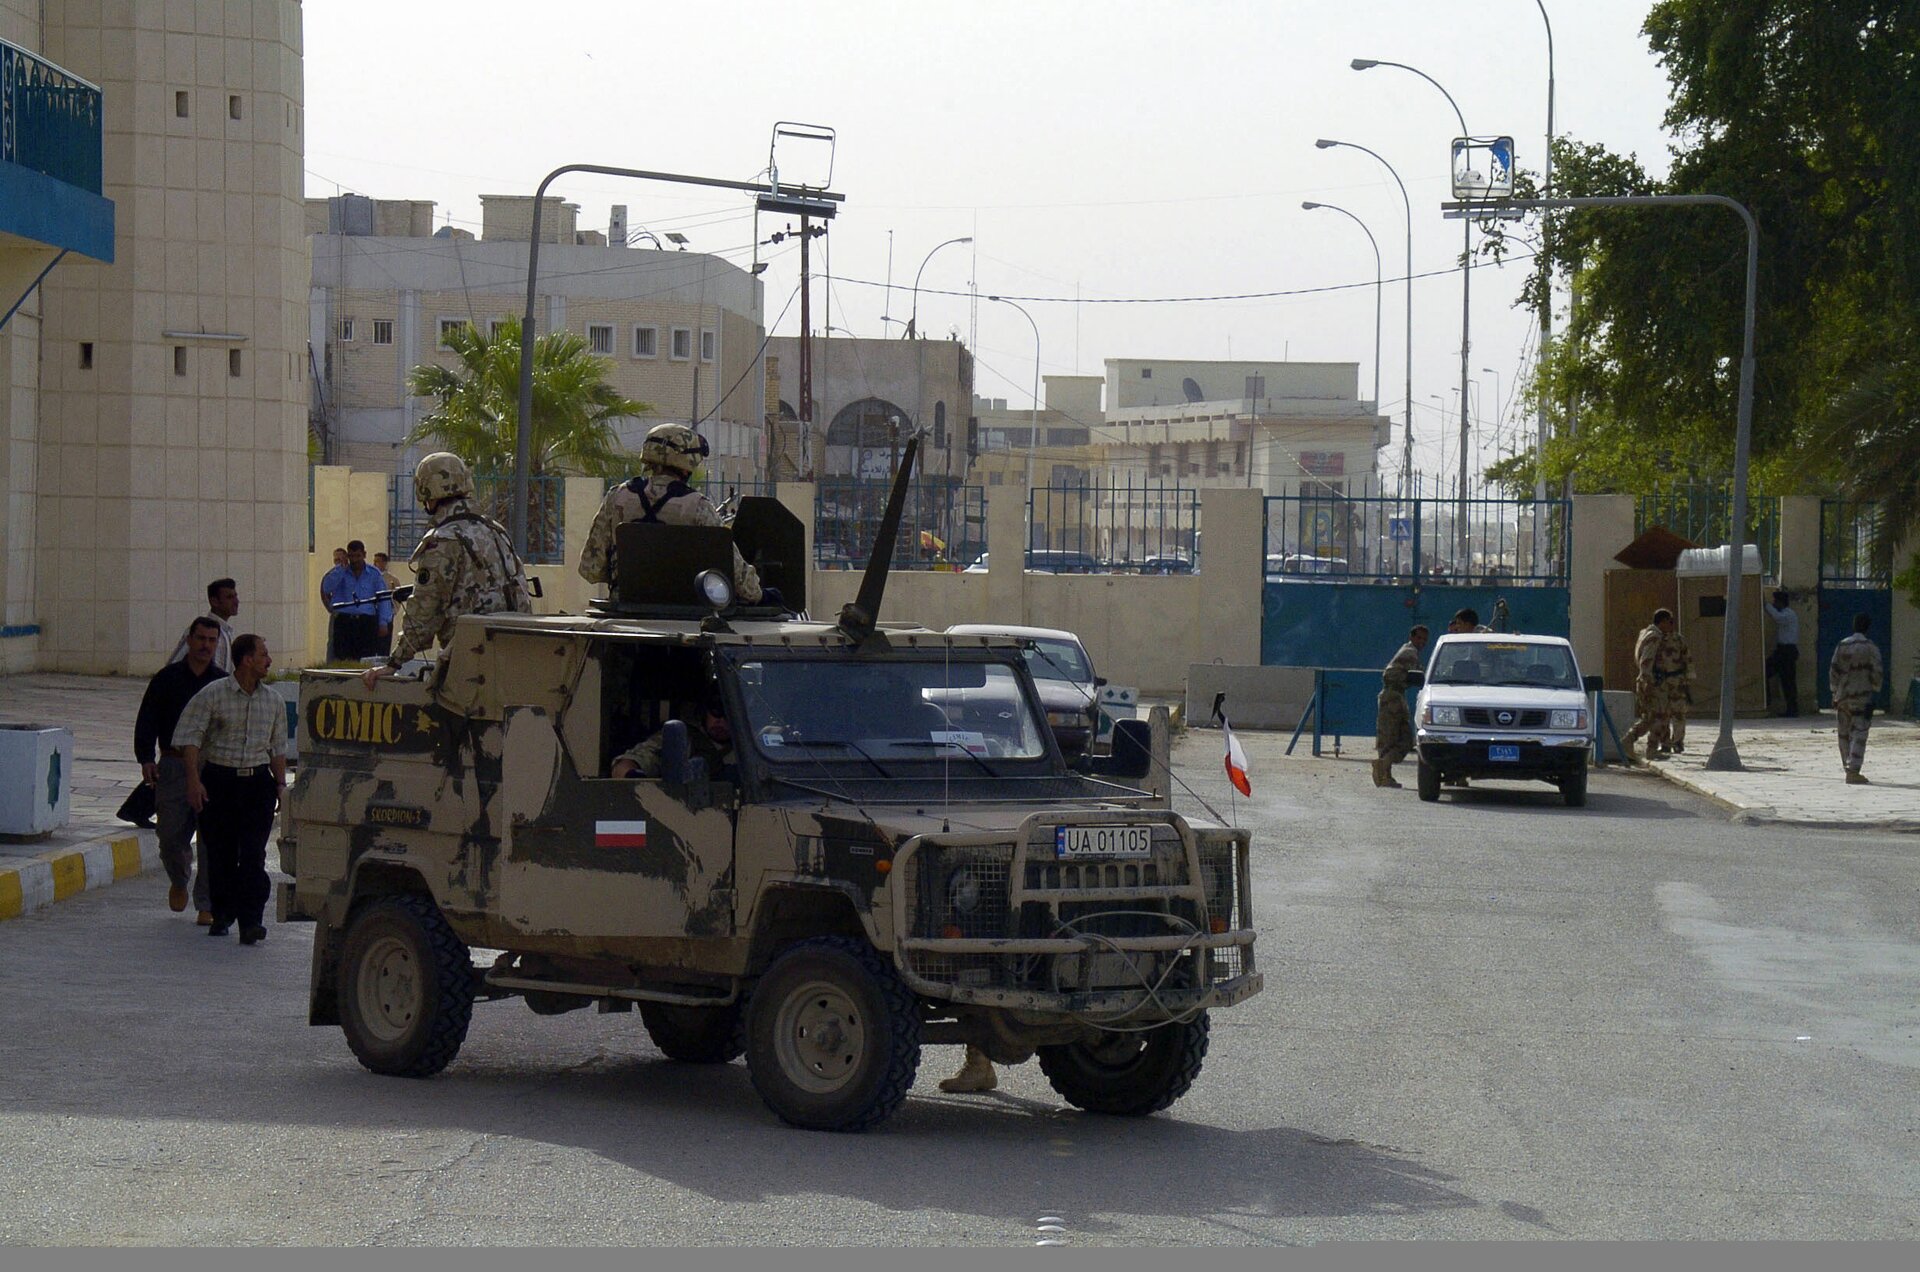 Na zdjęciu znajduje się polski patrol w samochodzie wojskowym w Iraku. Samochód na zdjęciu znajduje się bliżej lewej krawędzi fotografii. Jest opancerzony i posiada dwa otwory - jeden z tyłu samochodu dla strzelca z karabinem, drugi nad kabiną pojazdu dla obserwatora/drugiego strzelca. Dwóch żołnierzy z obu punktów wozu obserwuje okolicę, będąc odwróconymi do widza. Żołnierze i pojazd są maskowane w kolorze pustynnym. W tle utrwalona jest zabudowa miasta.